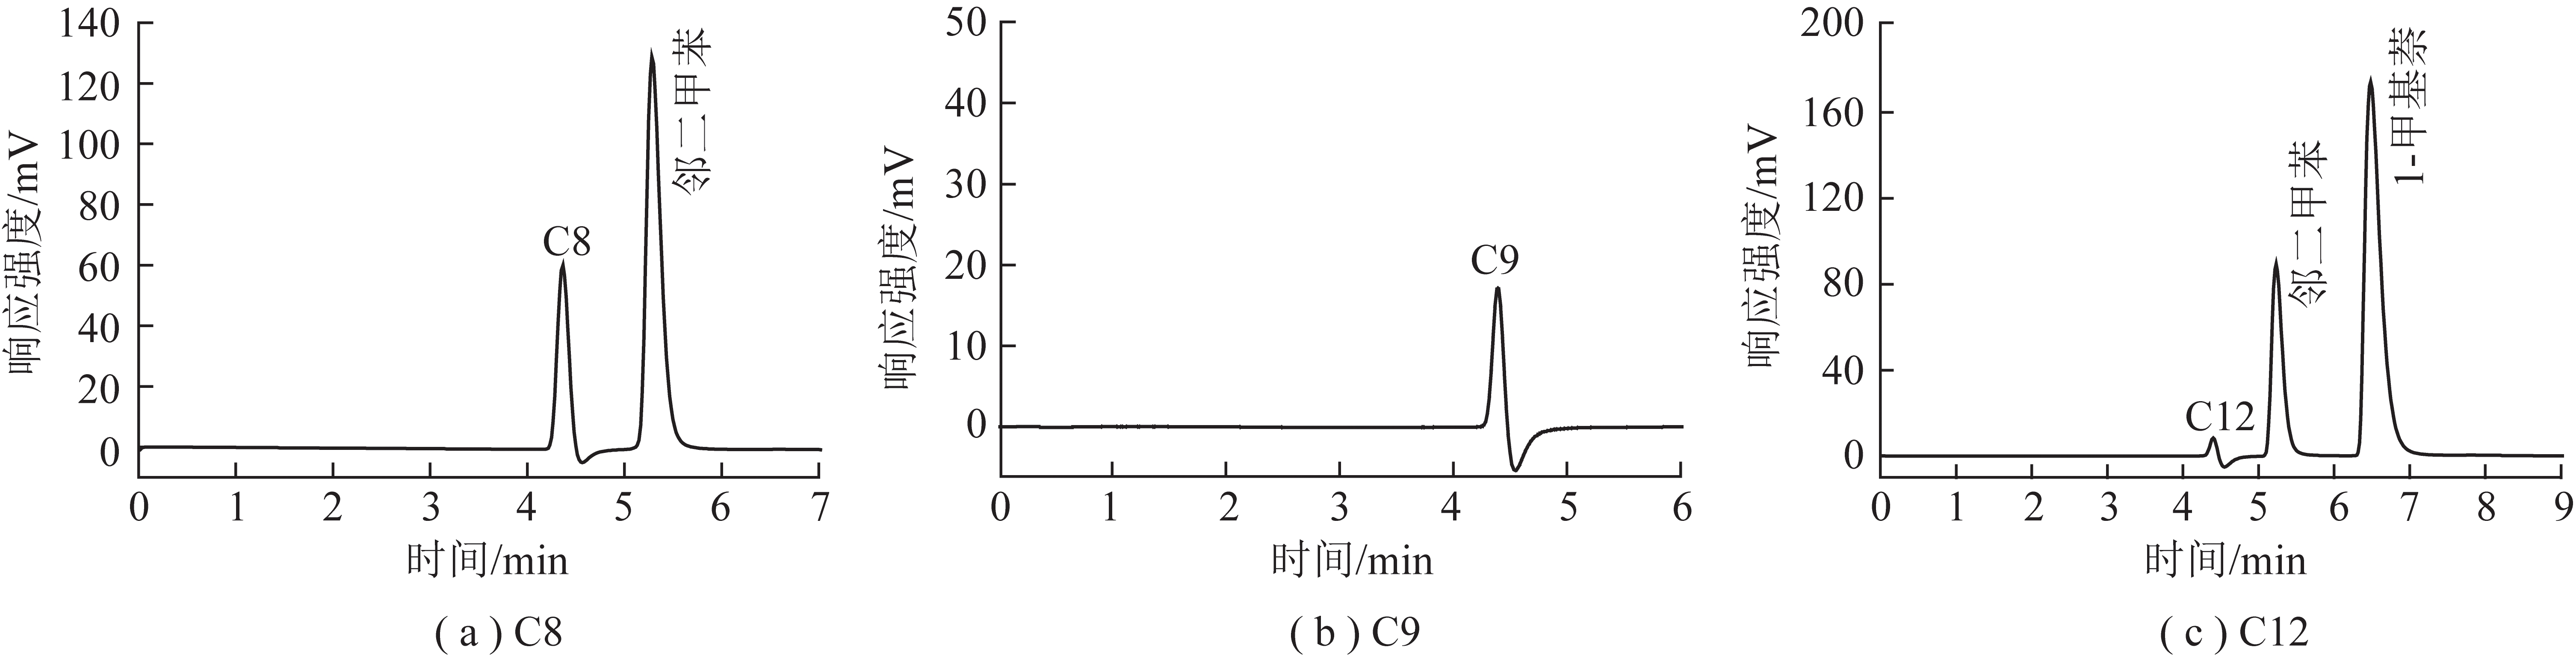 液相色谱系统峰对煤基油品烃族组成的影响